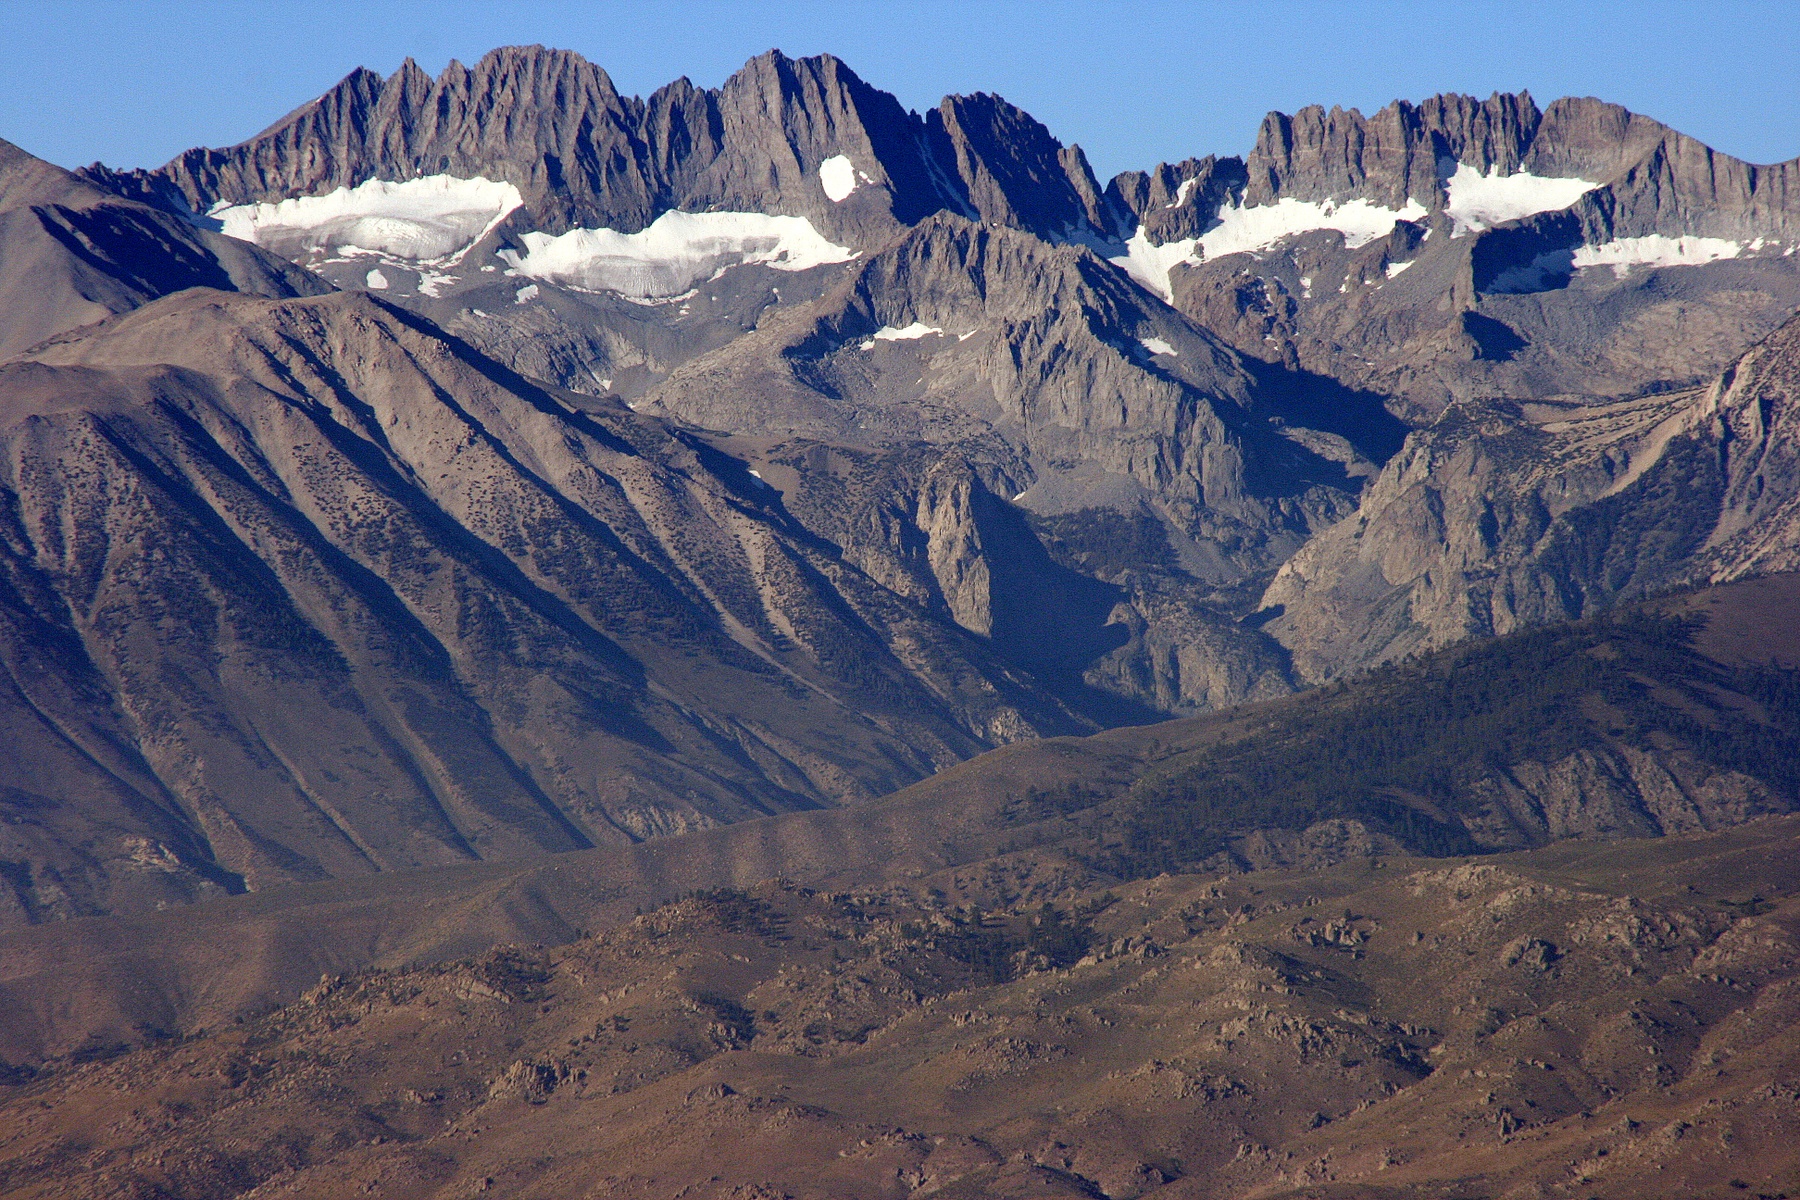 Sierra Nevada crest, CA